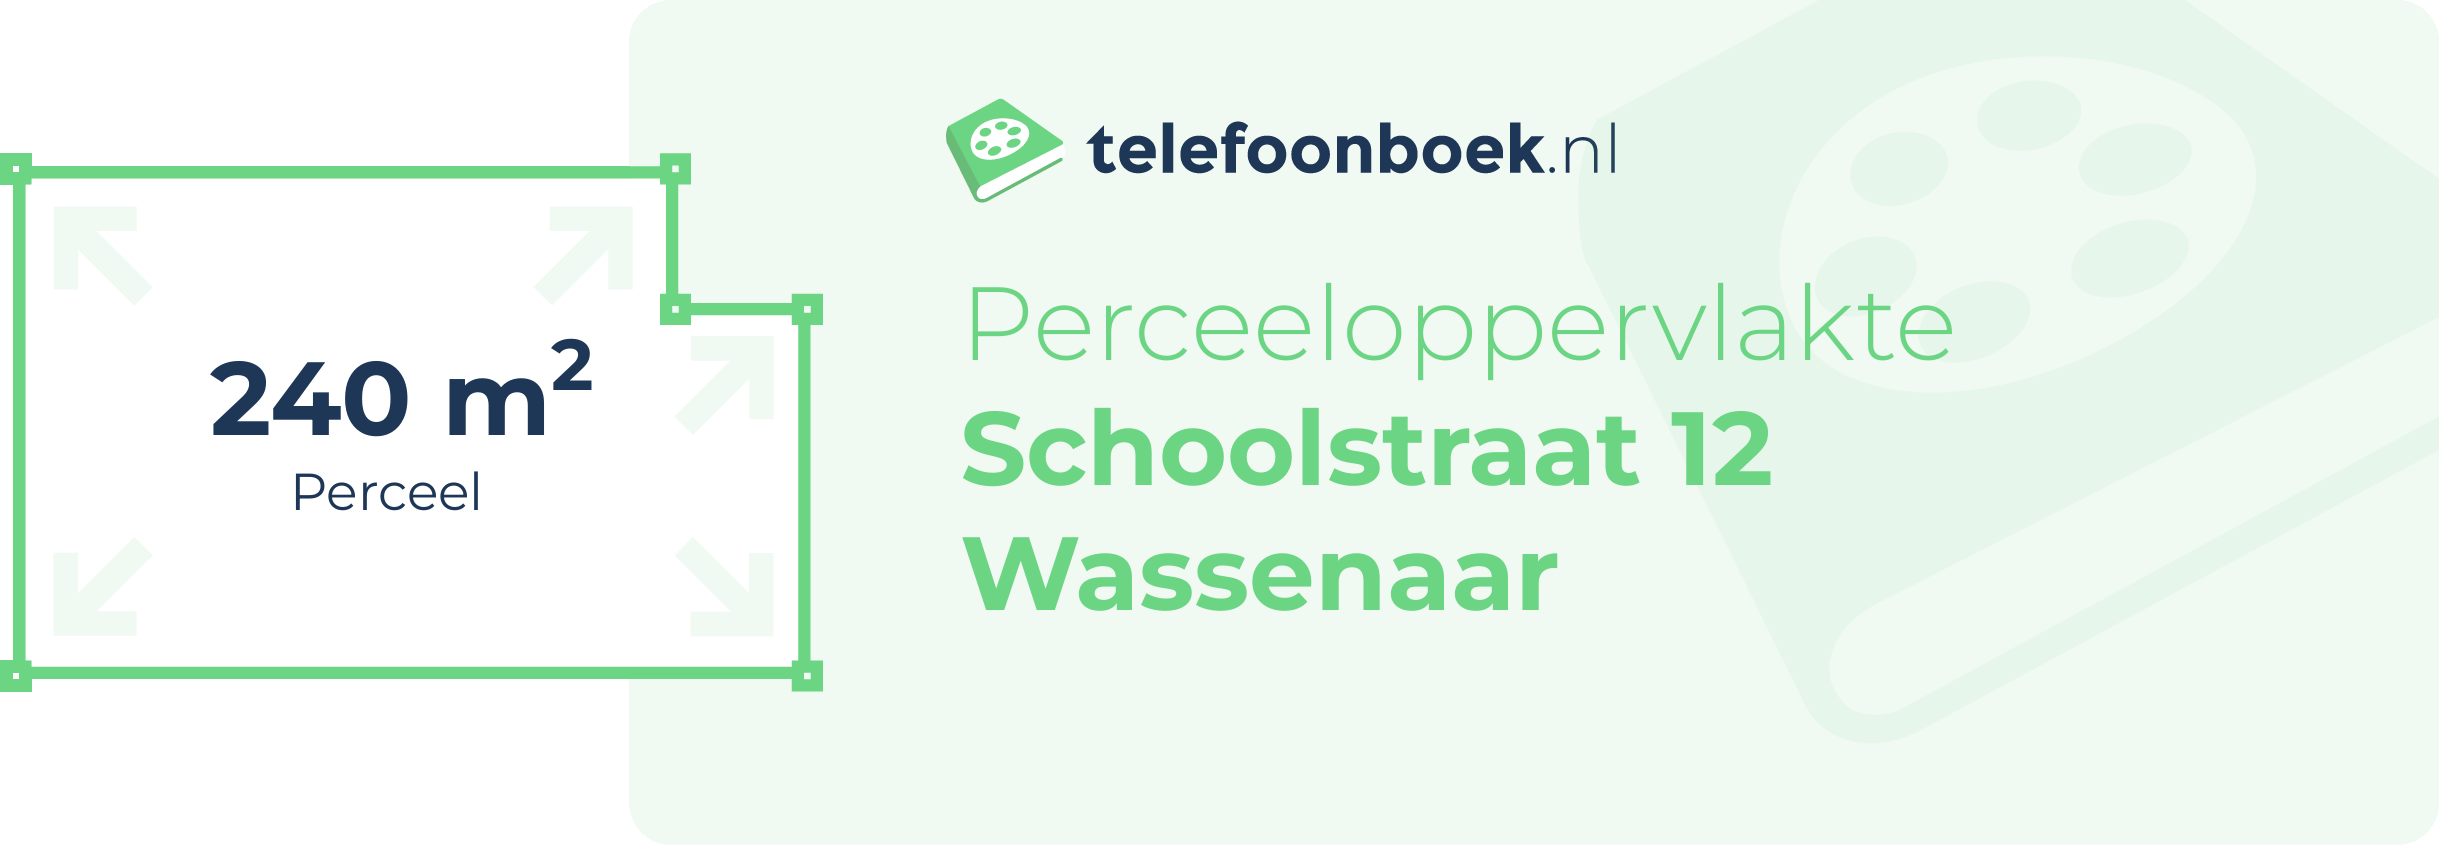 Perceeloppervlakte Schoolstraat 12 Wassenaar